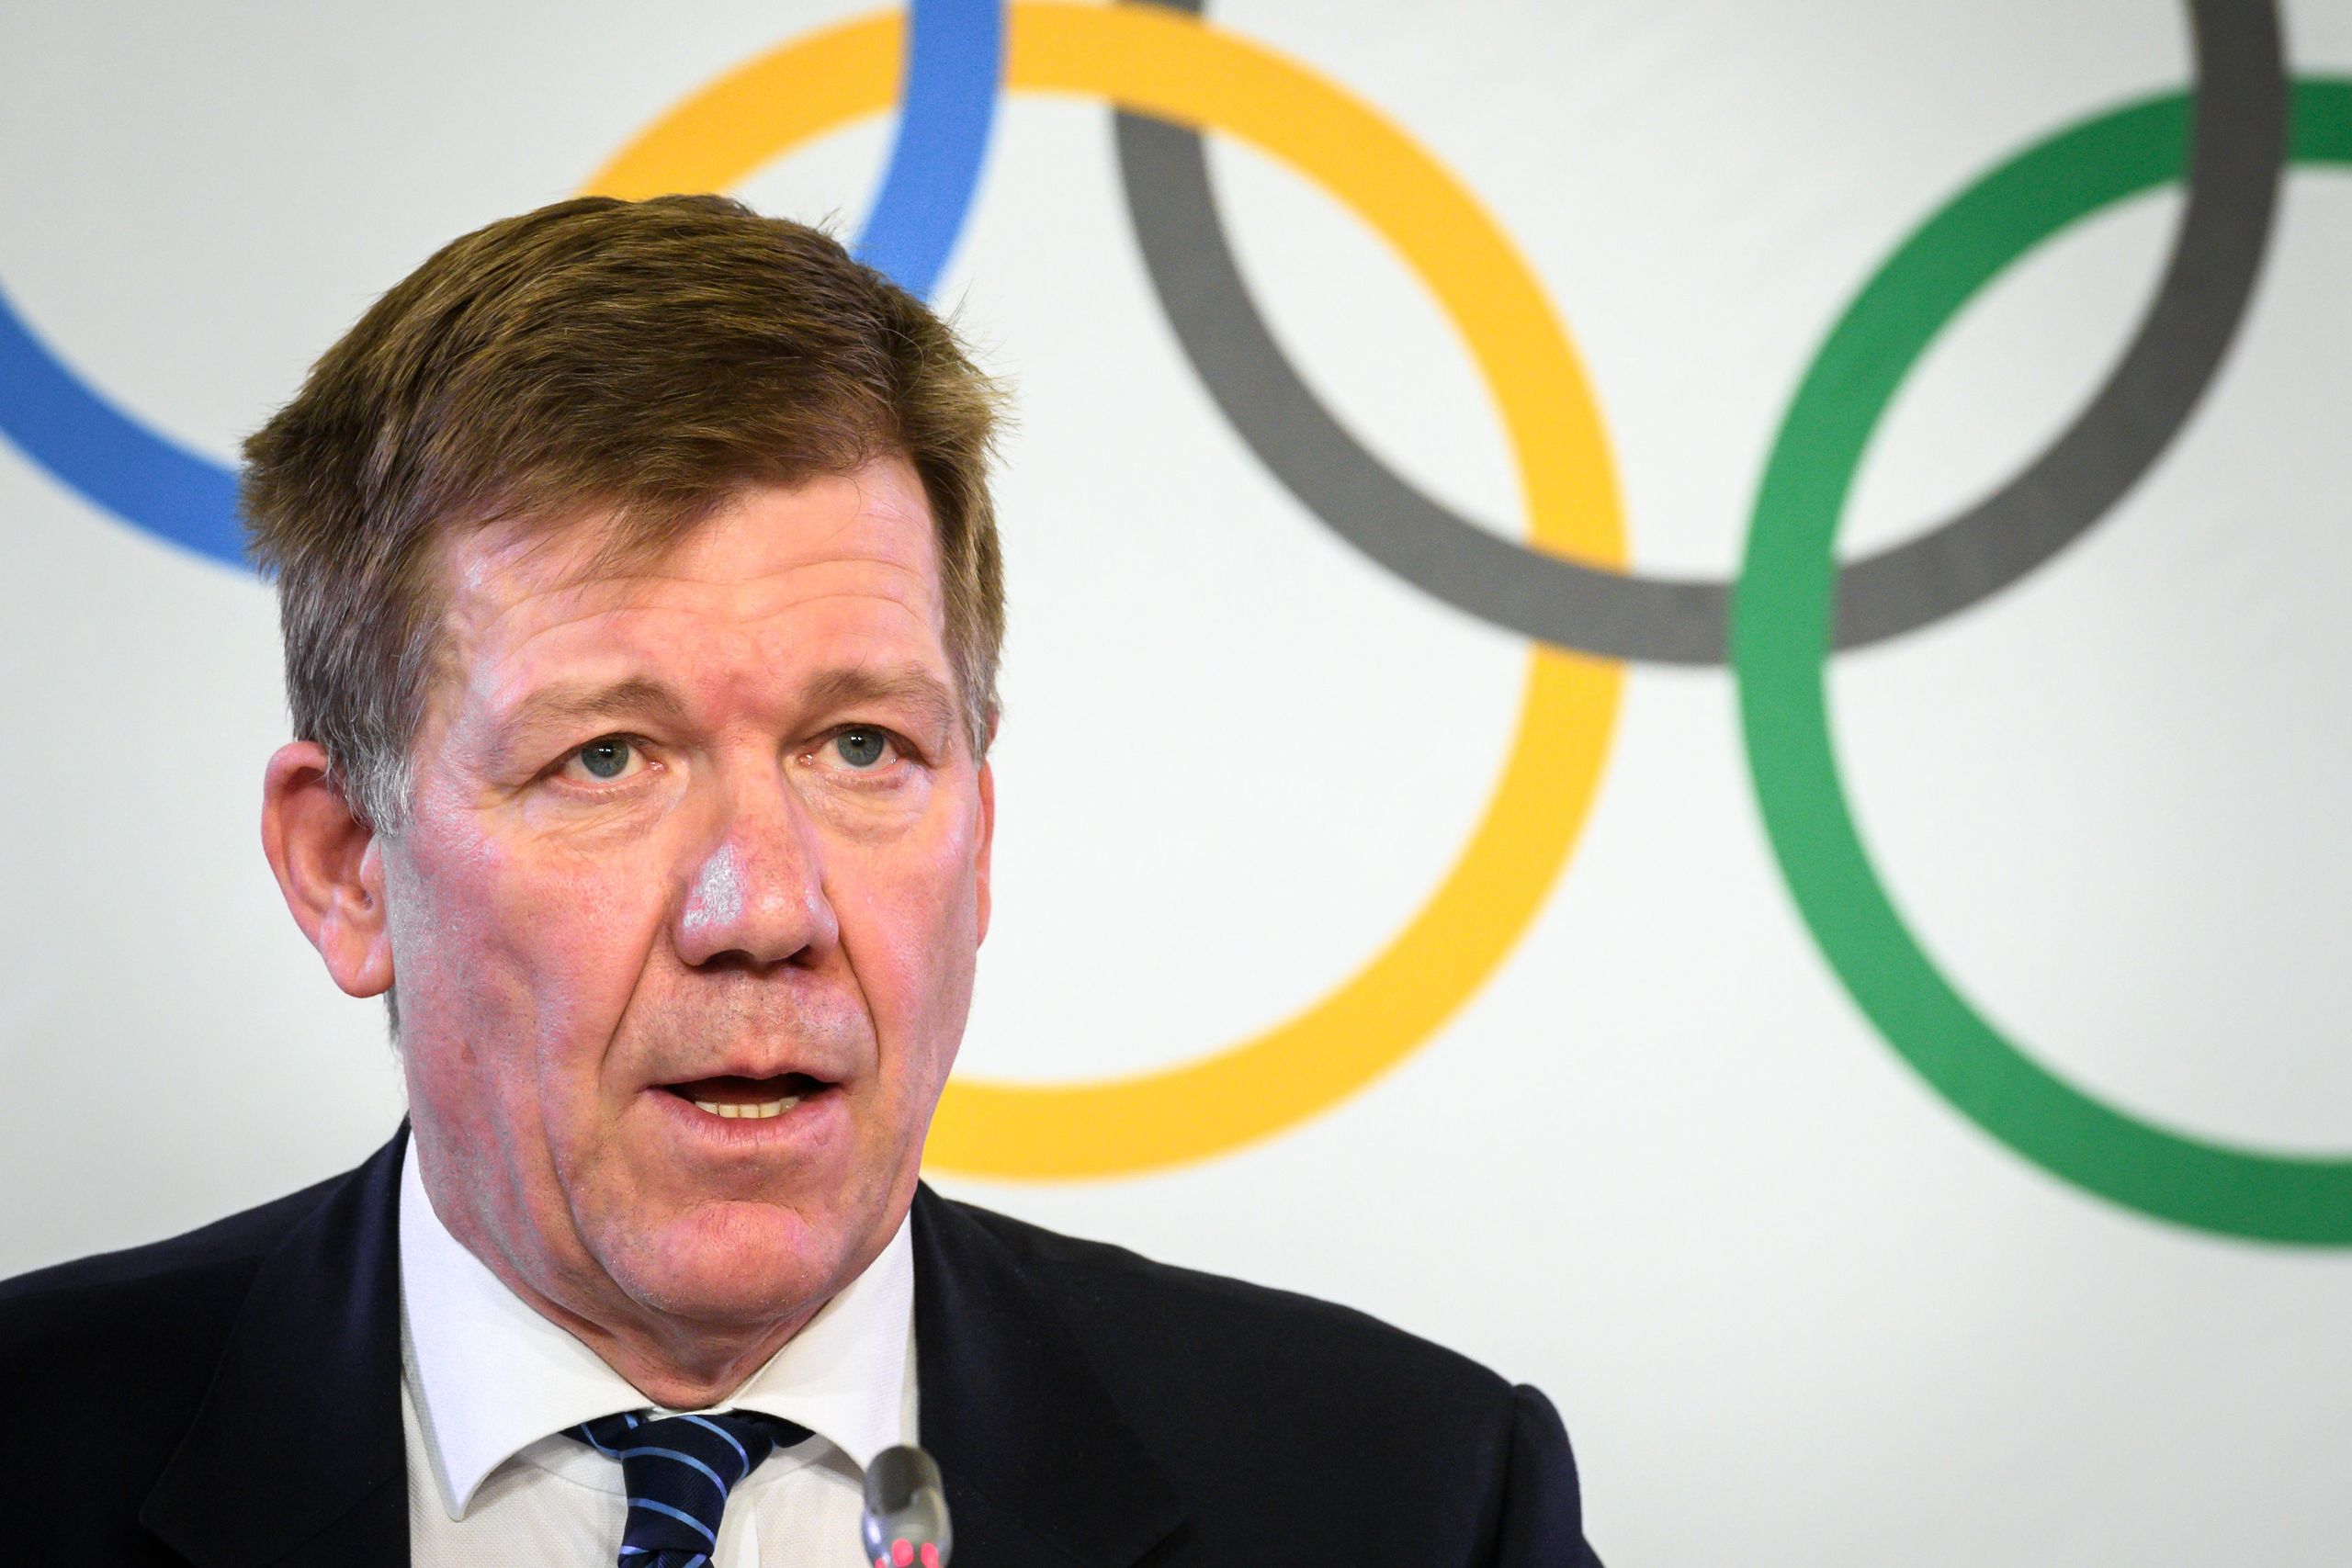 Directeur van International Olympic Committee (IOC) Richard Budgett deed de uitspraak